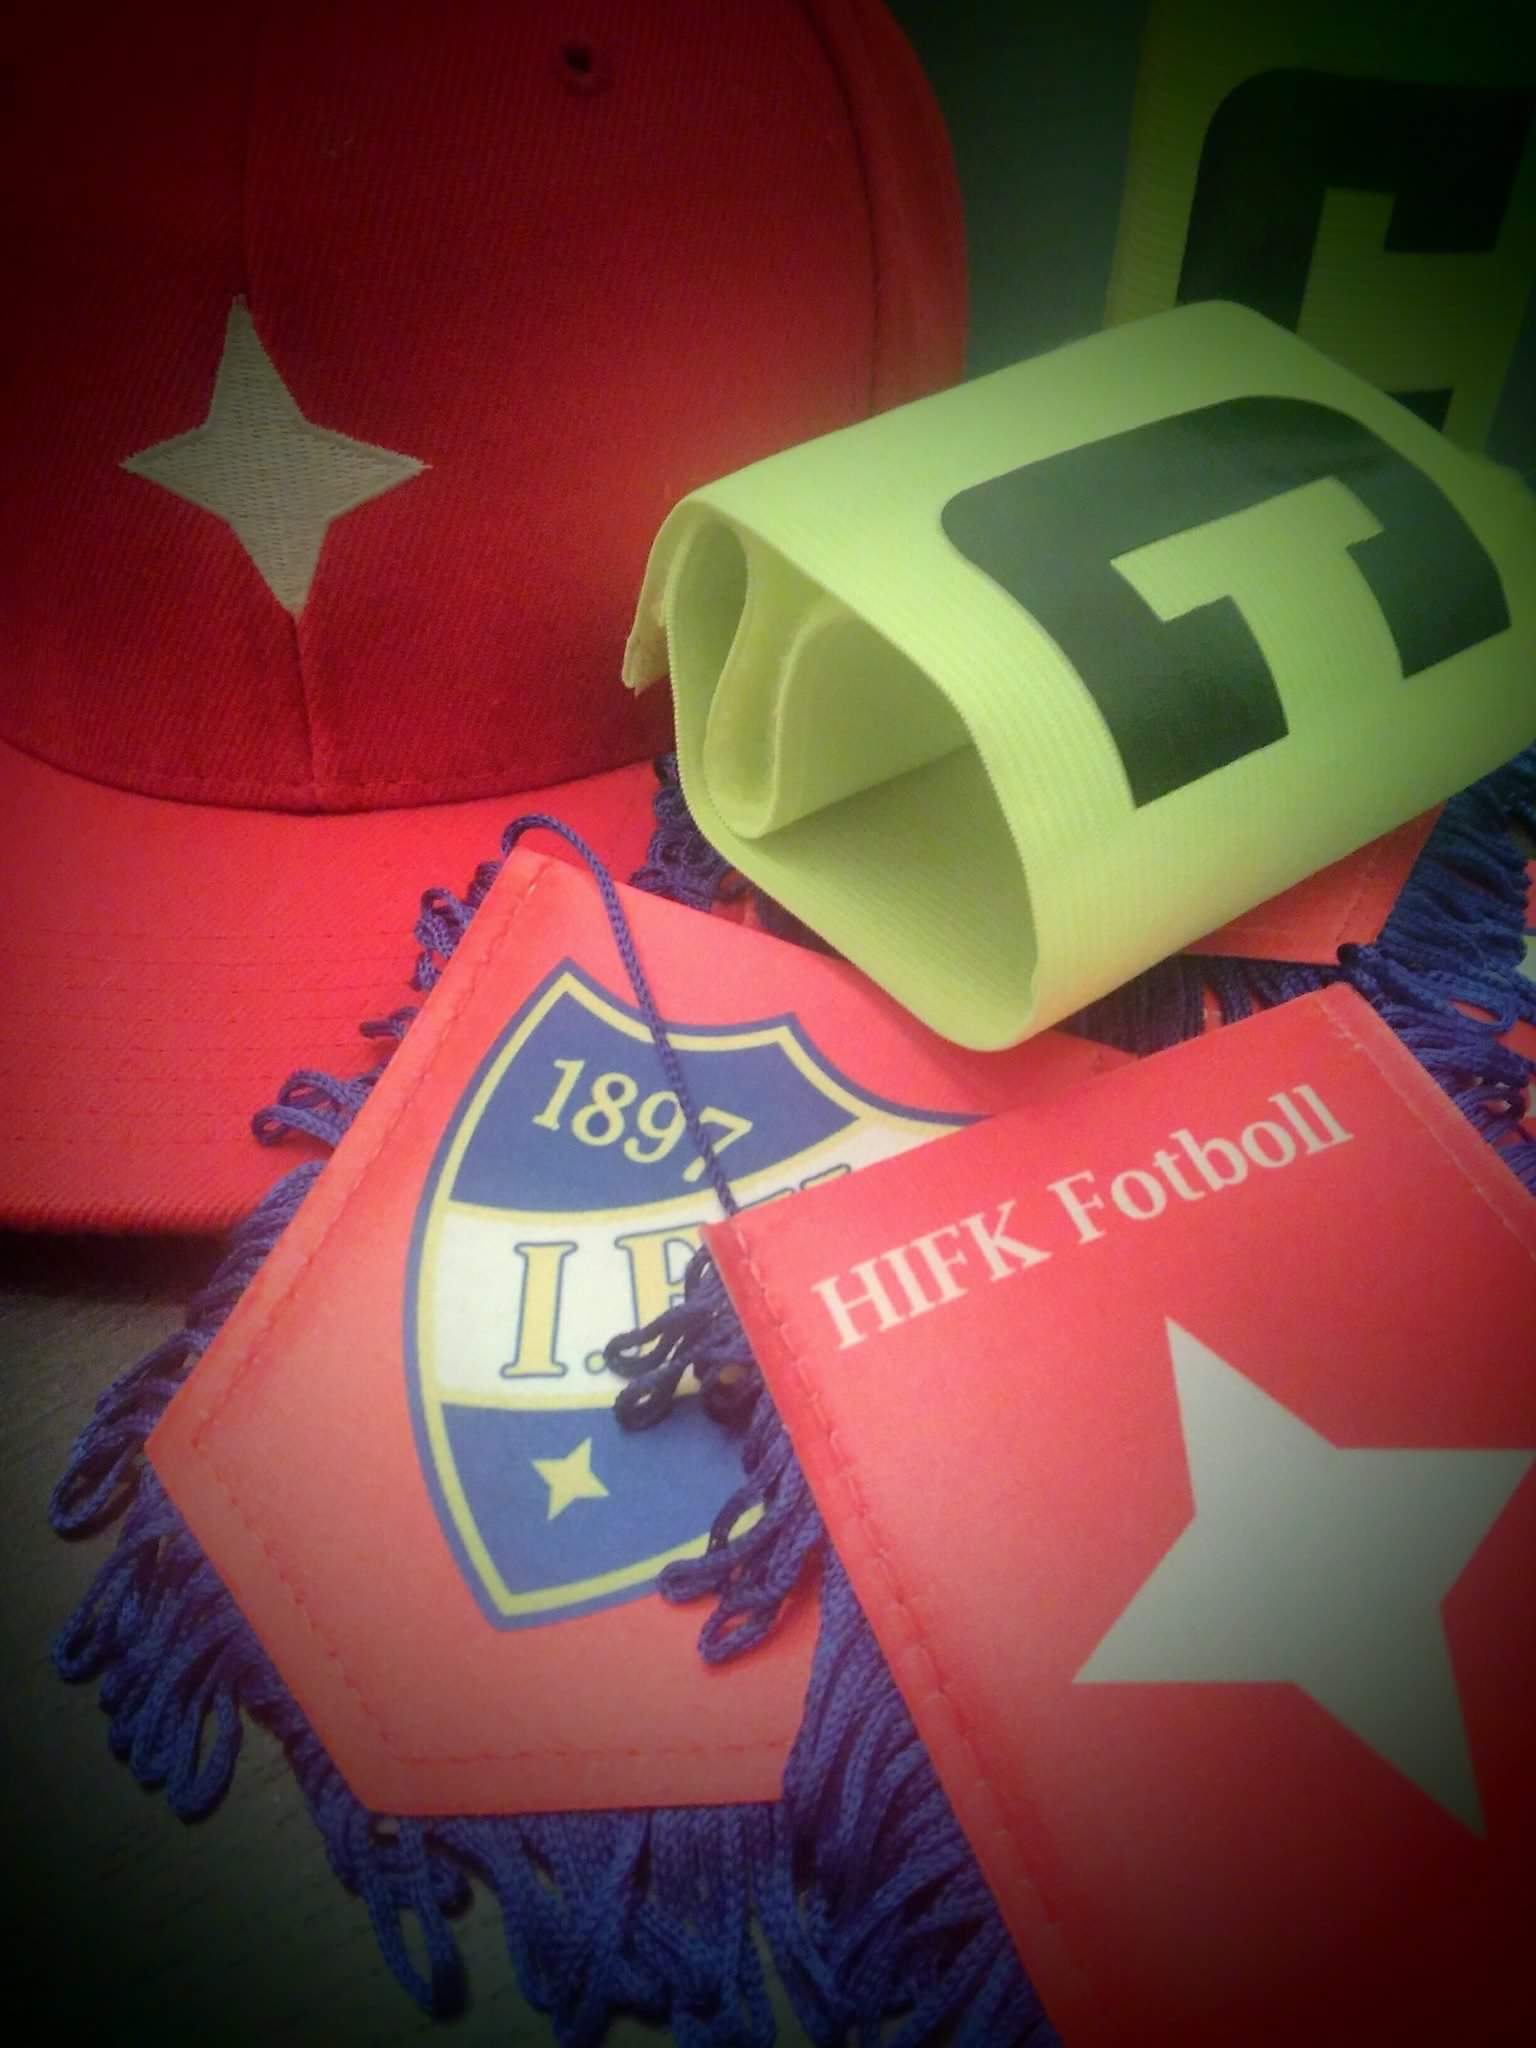 HIFK Fotboll P09-turnaus Väiskillä 21.5.2017 – Ilmoittautuminen avattu!